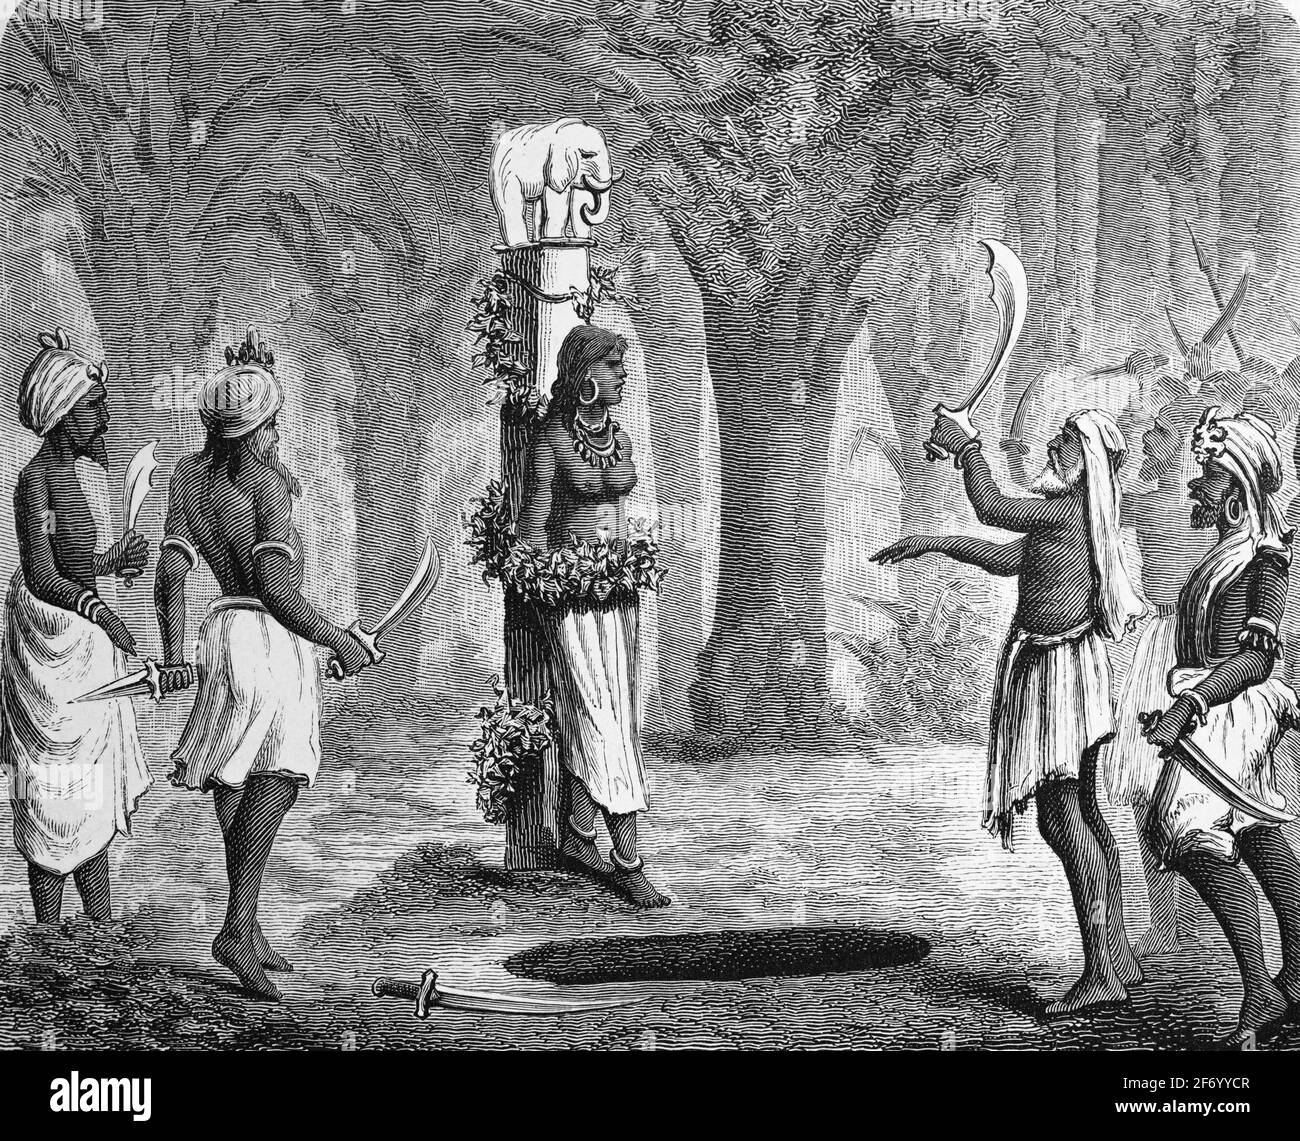 Illustration historique de la communauté tribale de Khonds célébrant un sacrifice humain autour d'un Totem, Inde, Asie, gravure de bois, Vienne. Leipzig 1881 Banque D'Images